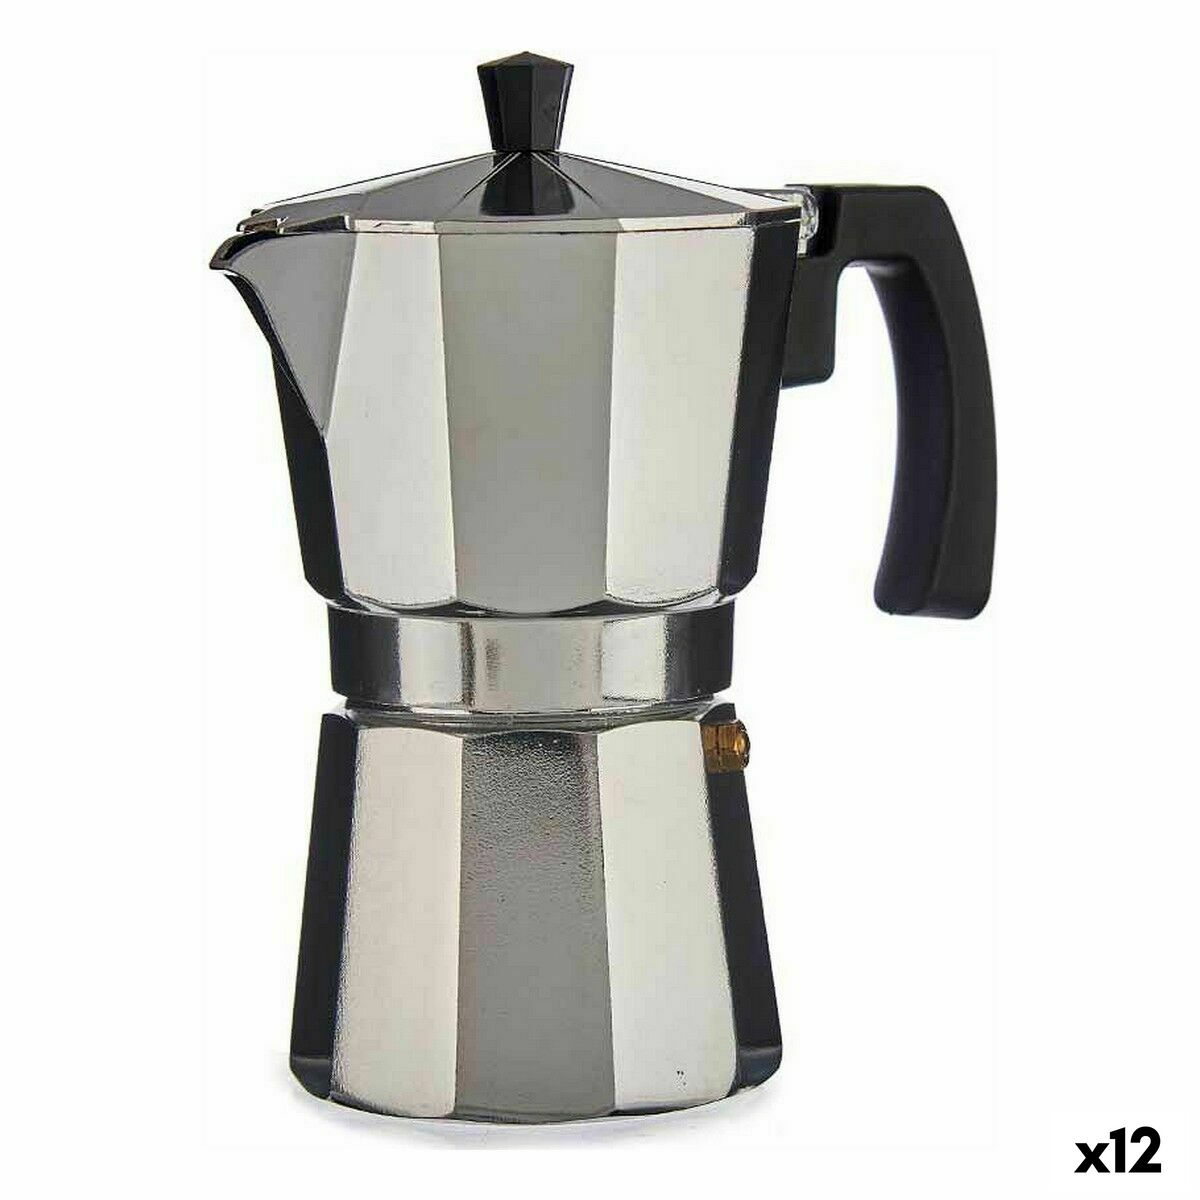 Cafetera italiana Moka Espresso de aluminio, cafetera con filtro, 300/600ml